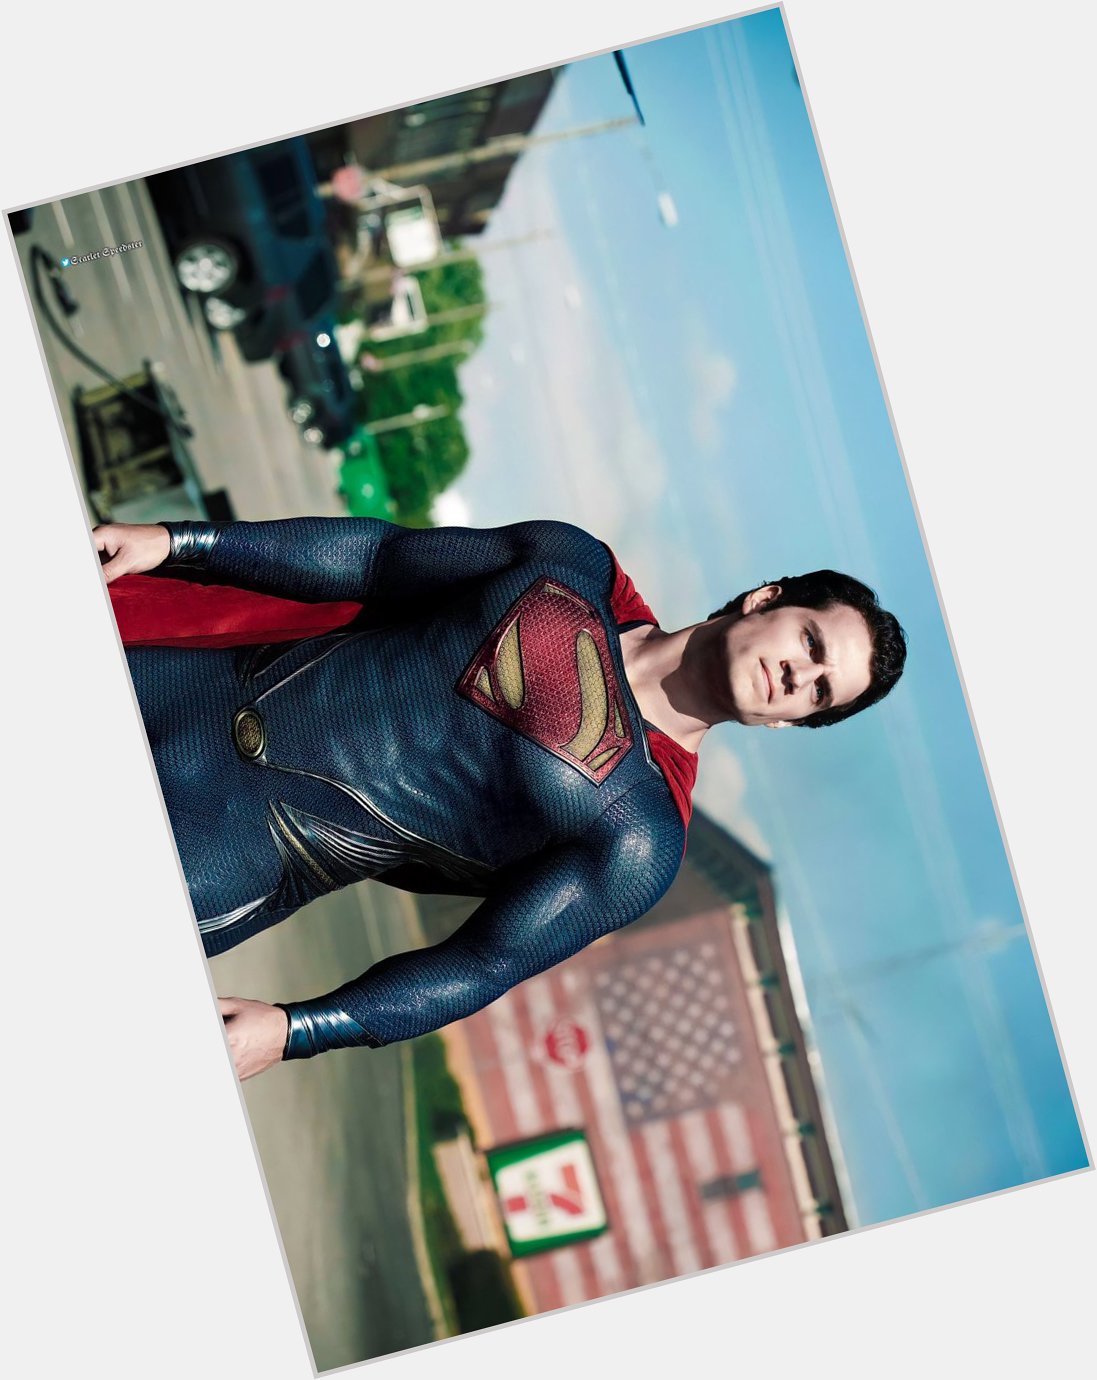 Happy Birthday Henry Cavill aka Superman 